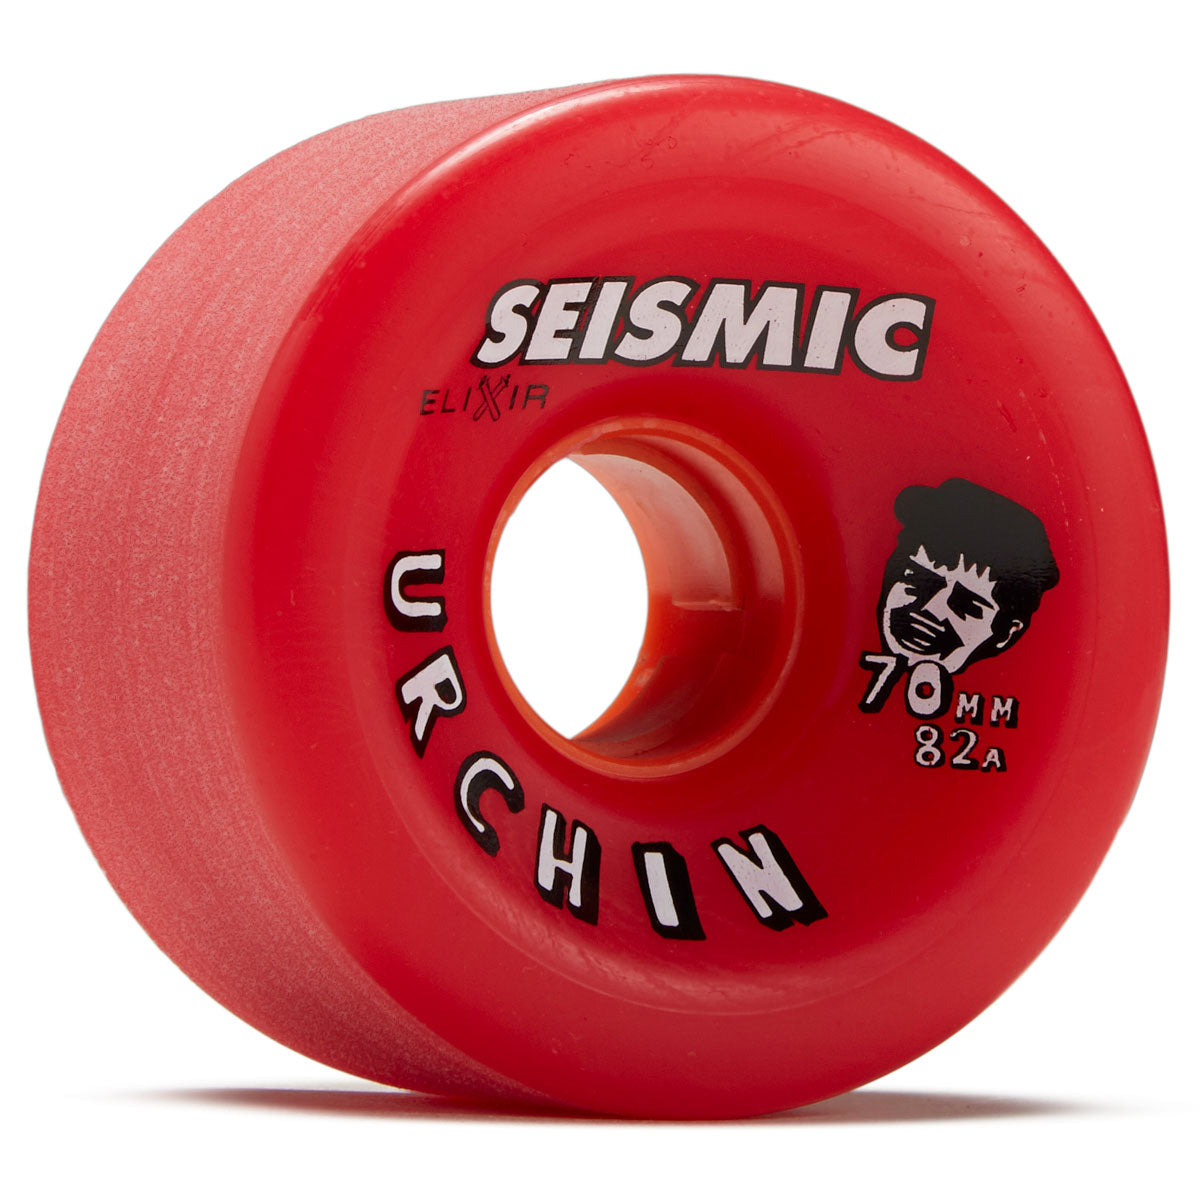 Seismic Urchin 82a Longboard Wheels - Red Elixir - 70mm image 1